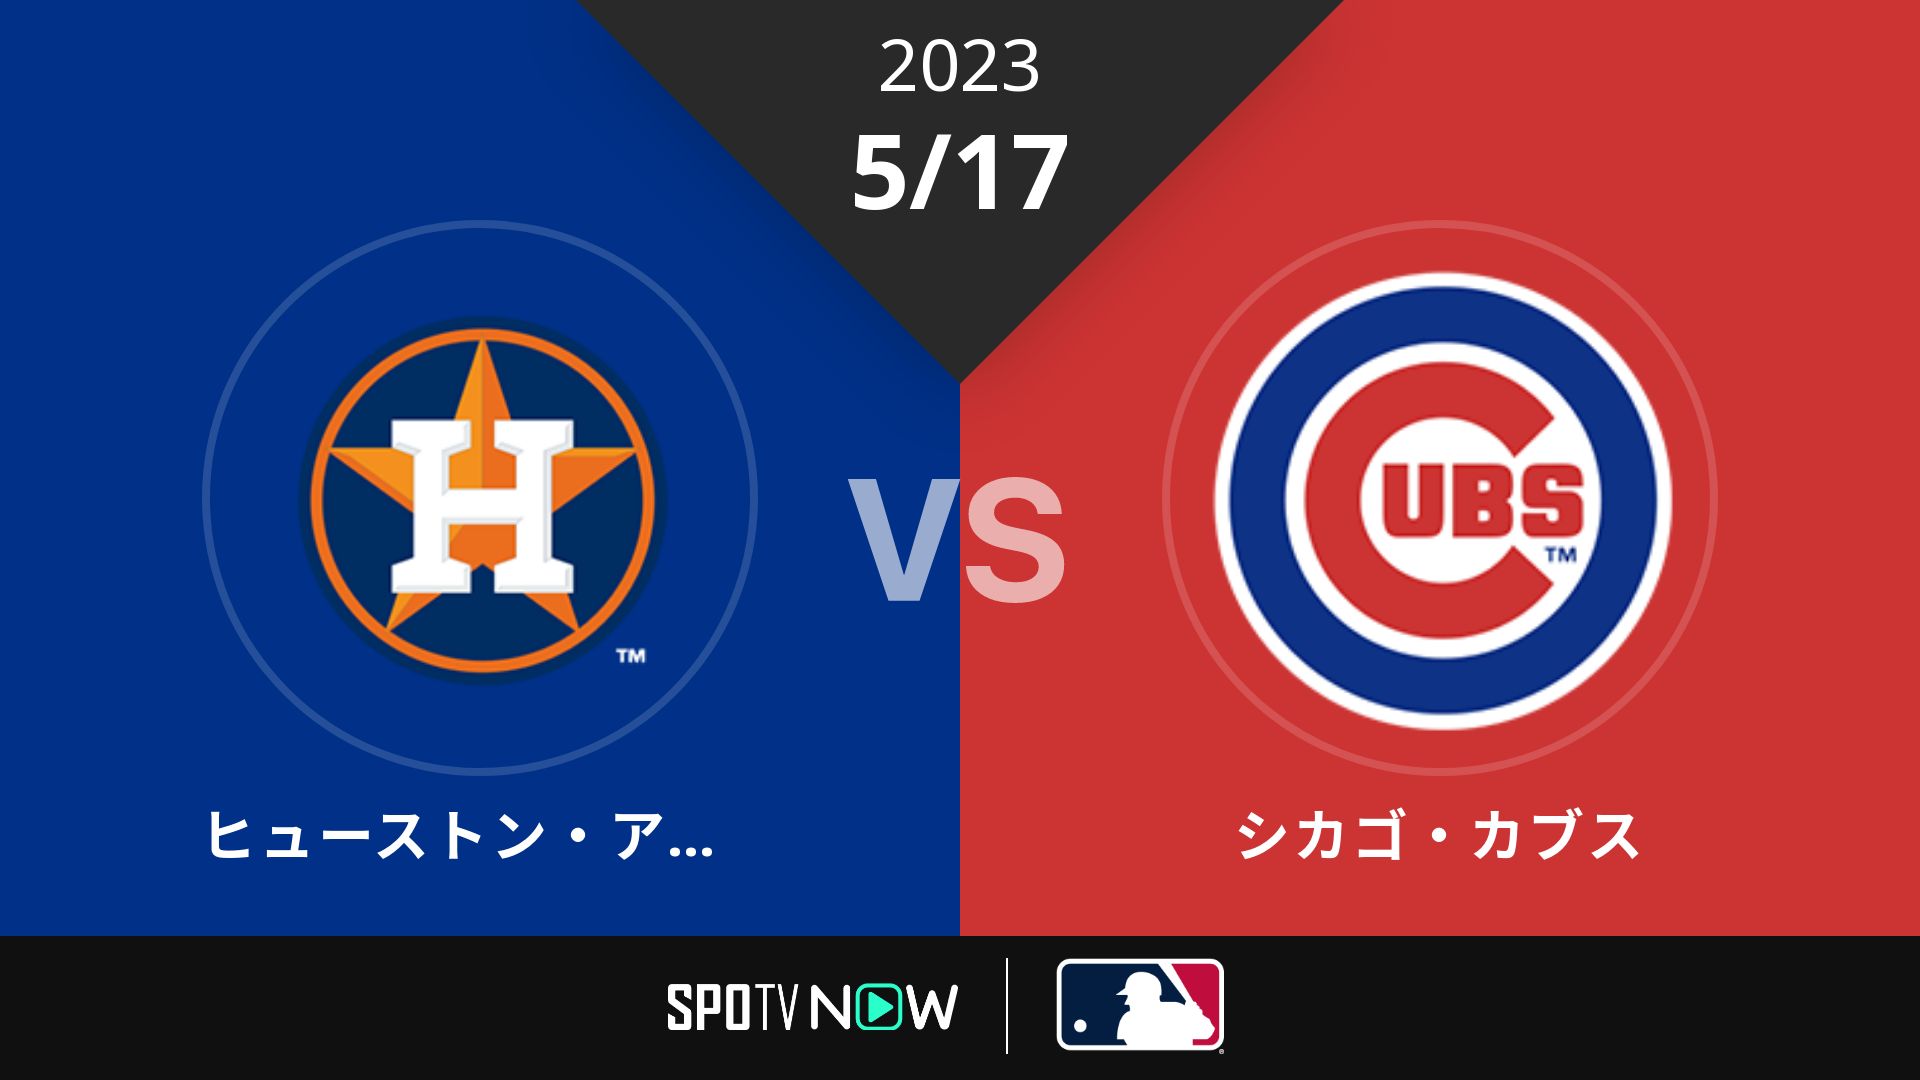 2023/5/17 アストロズ vs カブス [MLB]